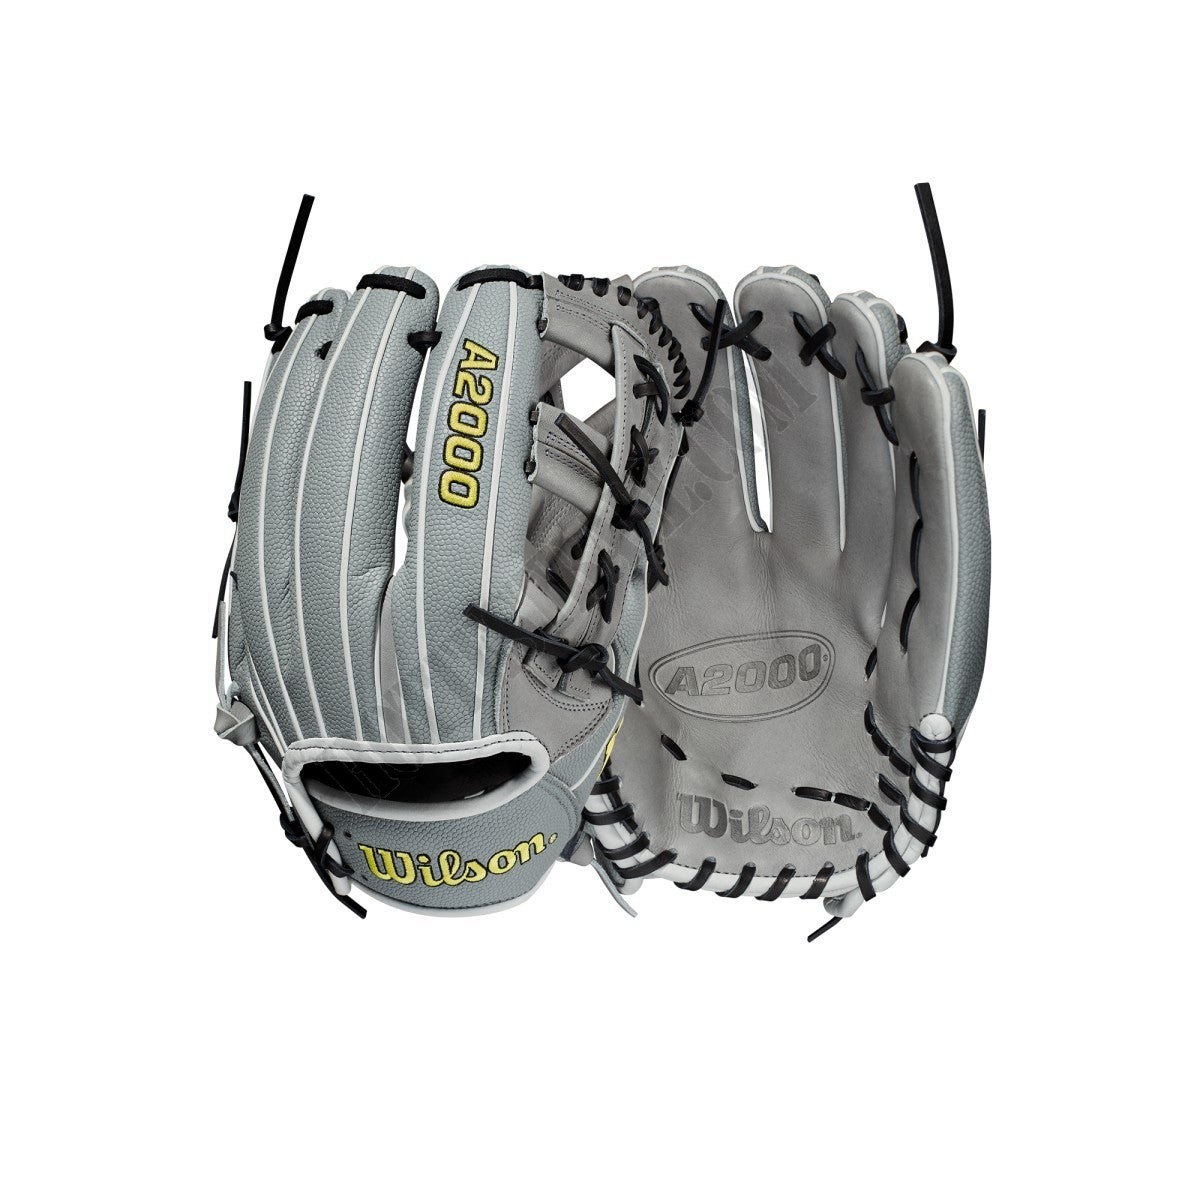 2021 A2000 1912SS 12" Infield Baseball Glove ● Wilson Promotions - 2021 A2000 1912SS 12" Infield Baseball Glove ● Wilson Promotions